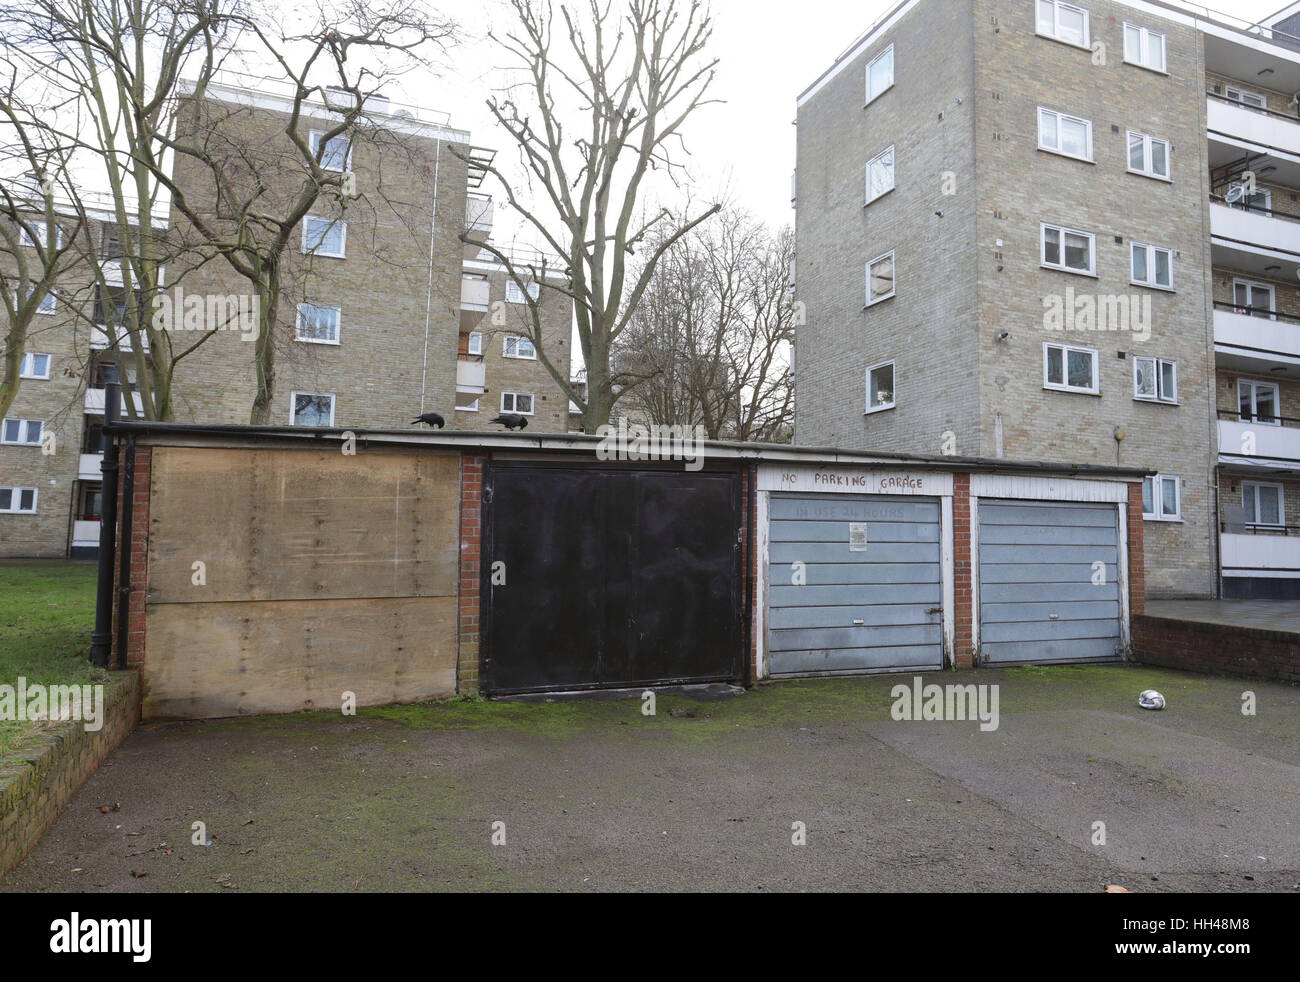 Vue générale de garages sur le Quadrant Highbury estate dans le nord de Londres, alors que des milliers de nouvelles maisons pourraient être créés à travers Londres si l'espace occupé par l'ancien conseil en propriété garages a été libéré, la recherche suggère. Banque D'Images